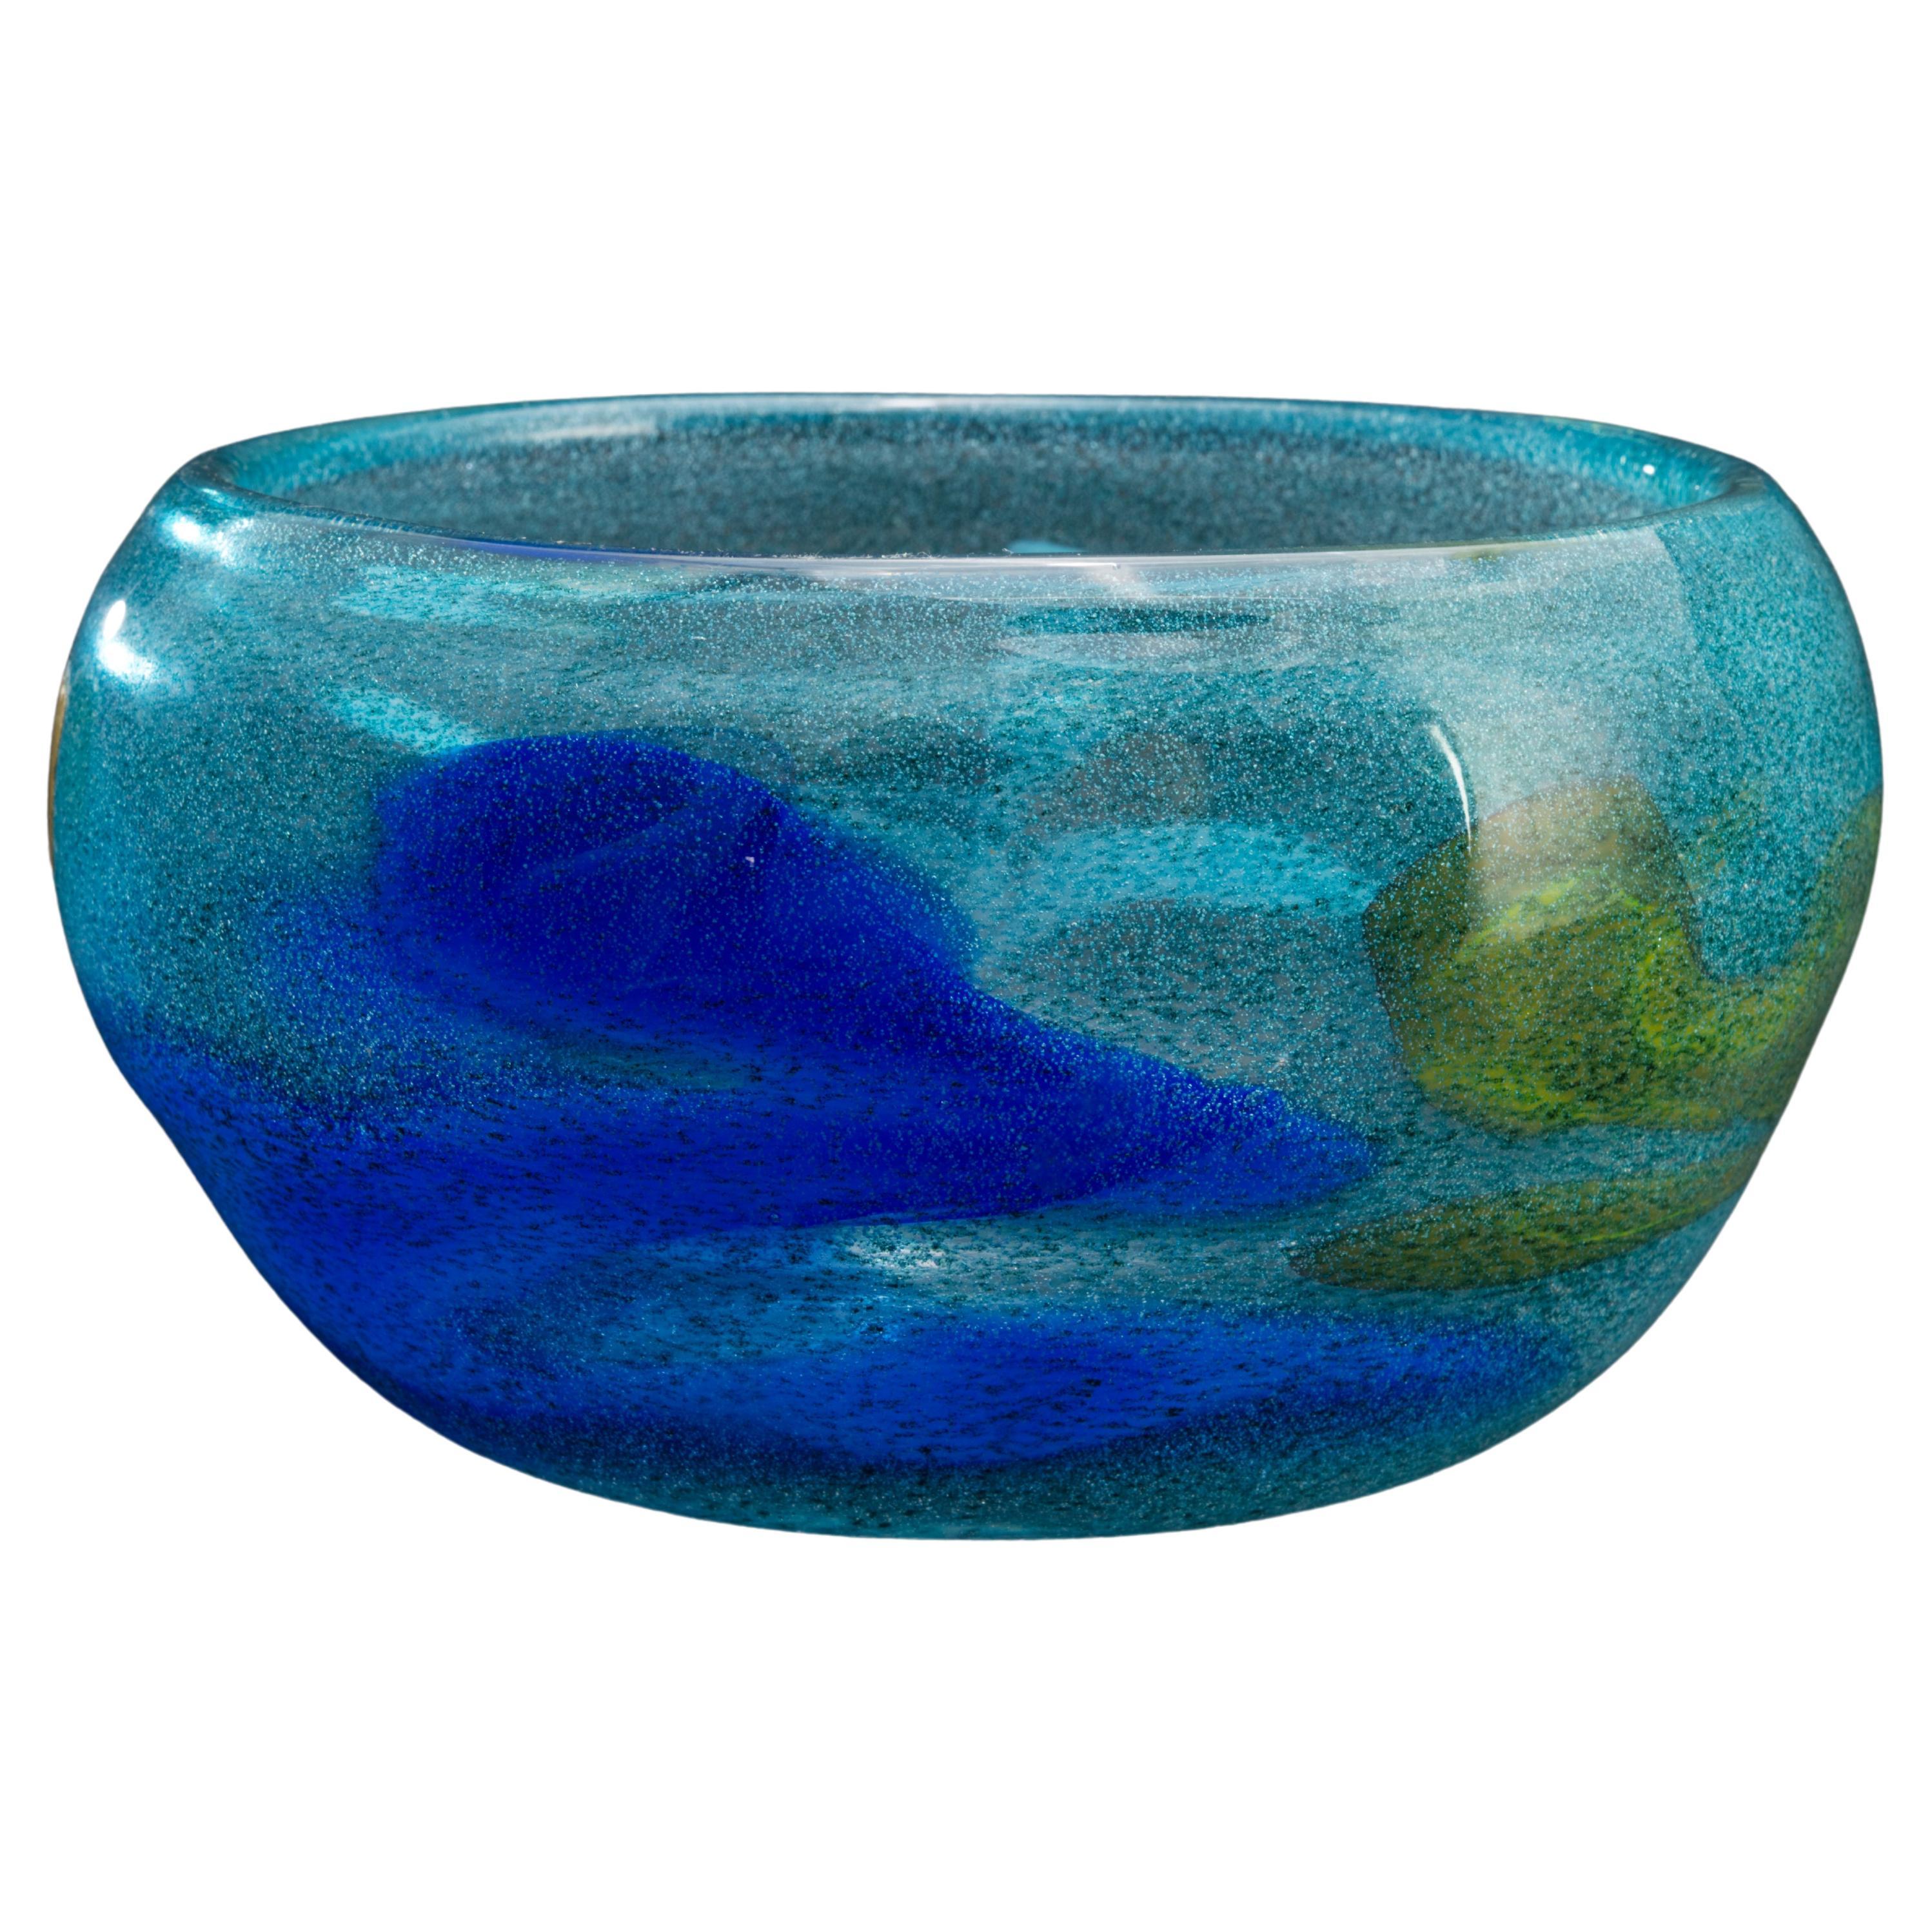 Bengt Orup for Johansfors Sweden Modernist Blue Art Glass Vase For Sale